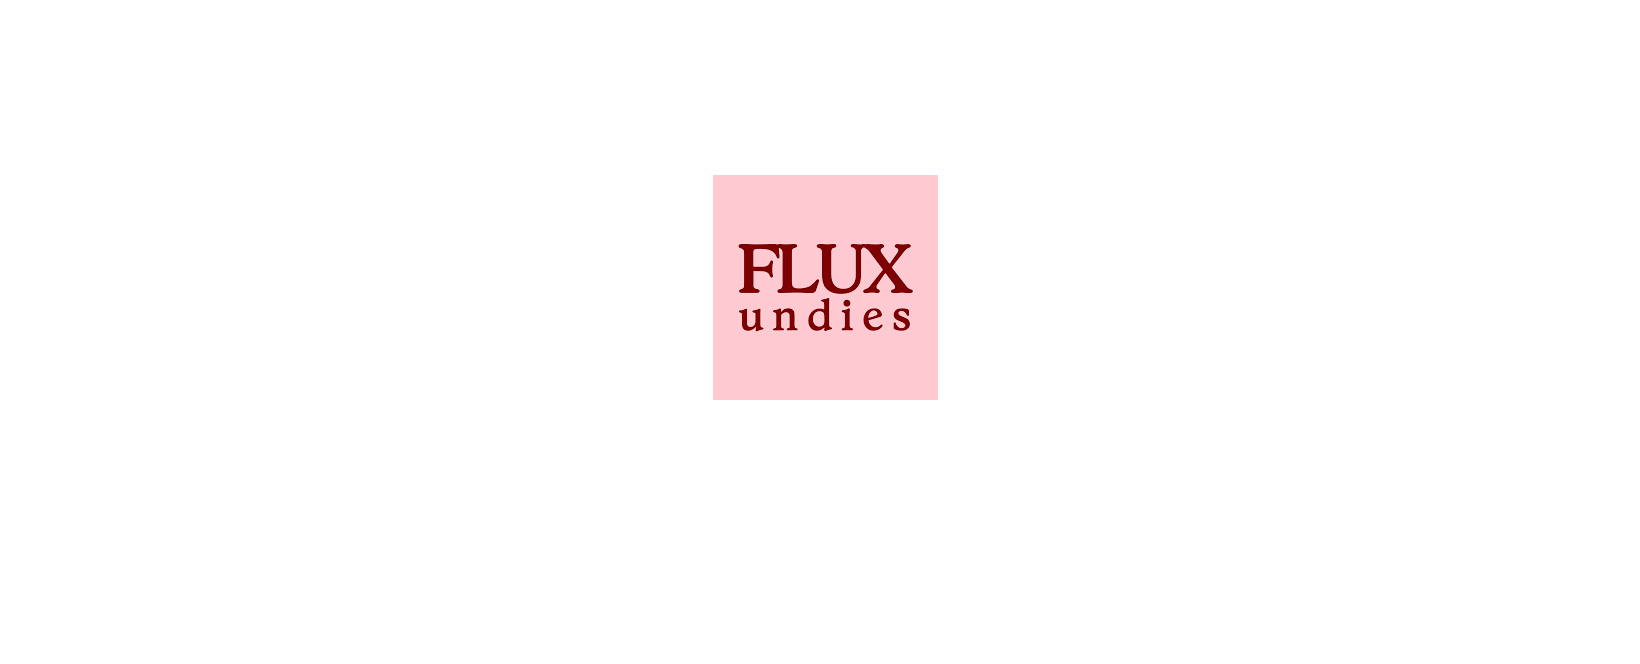 FLUX Undies Discount Code 2022